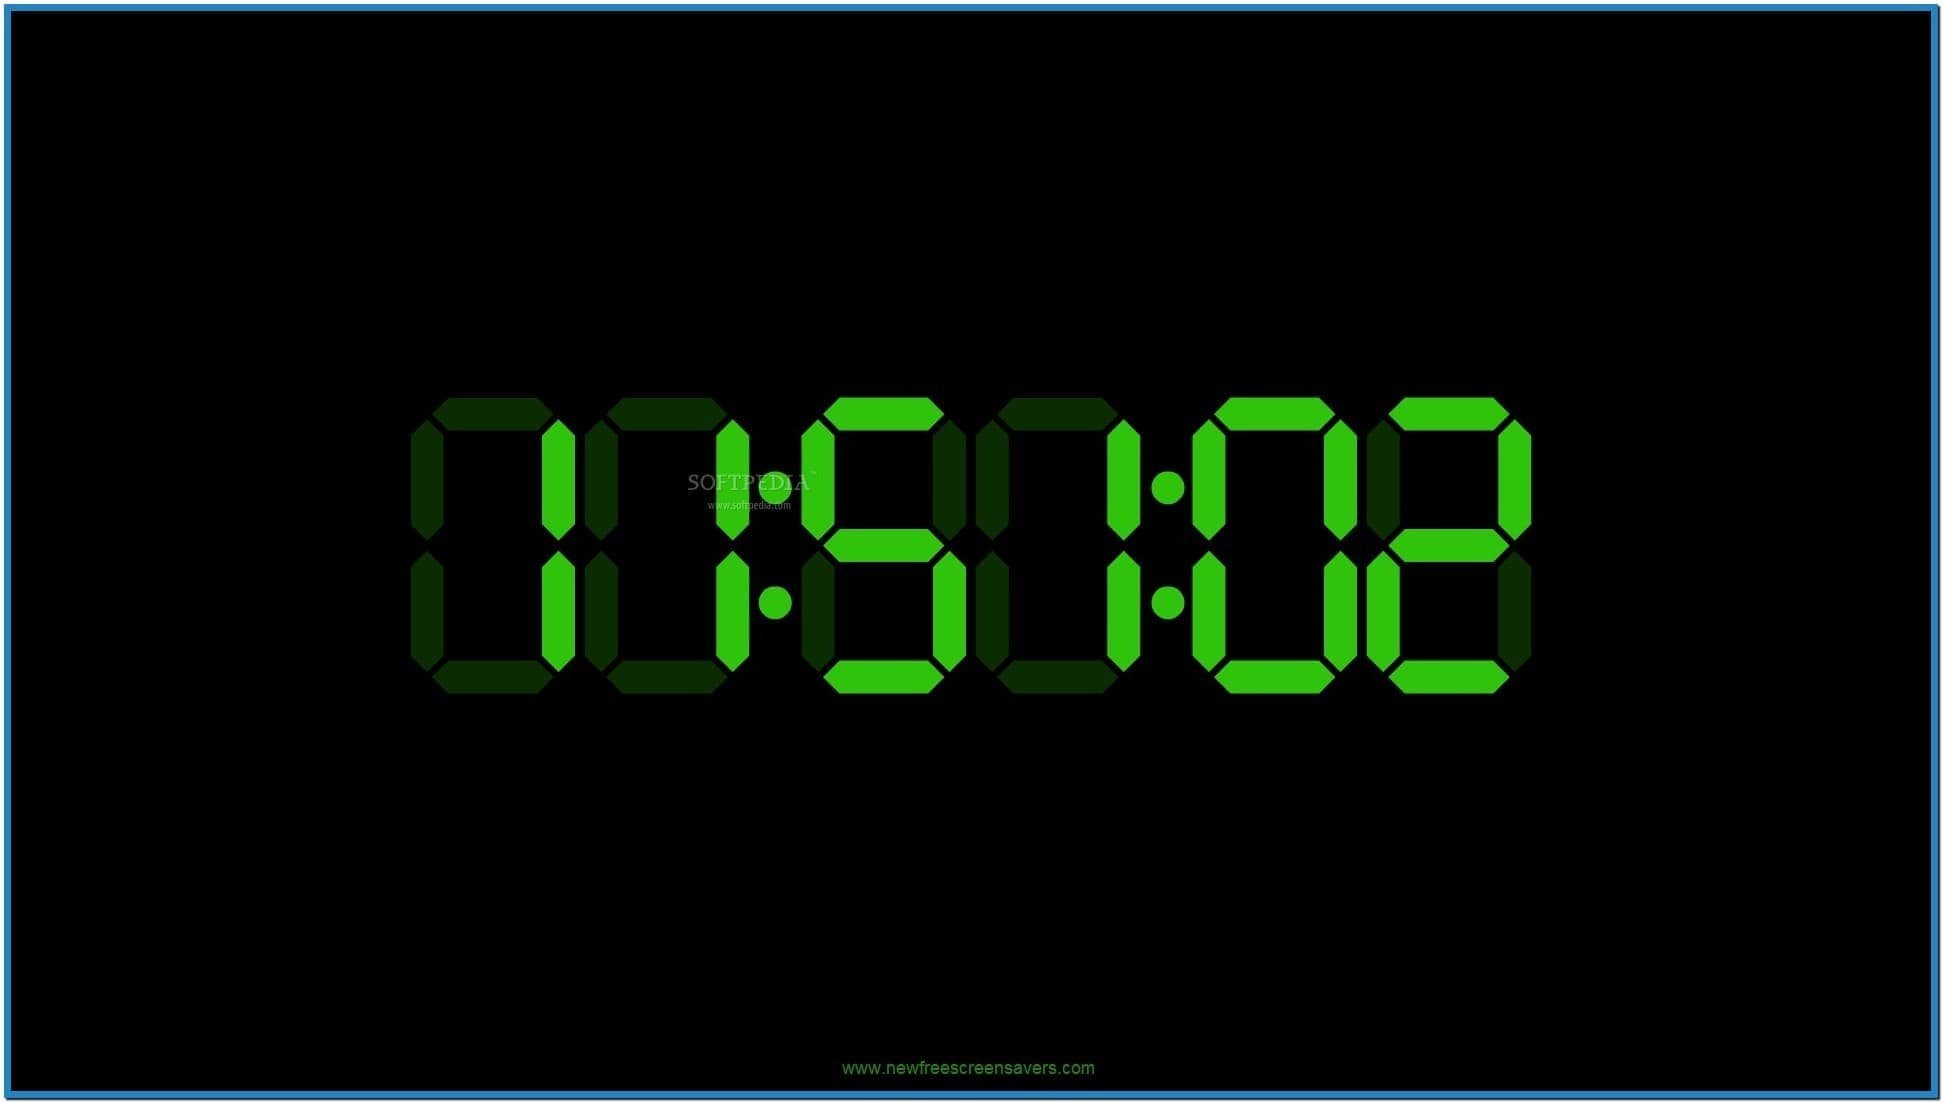 Установить простые часы. Электронные часы диджитал клок 1018. Часы Digital Clock 200730138828.4. Электронные часы на черном фоне. Скринсейвер электронные часы.